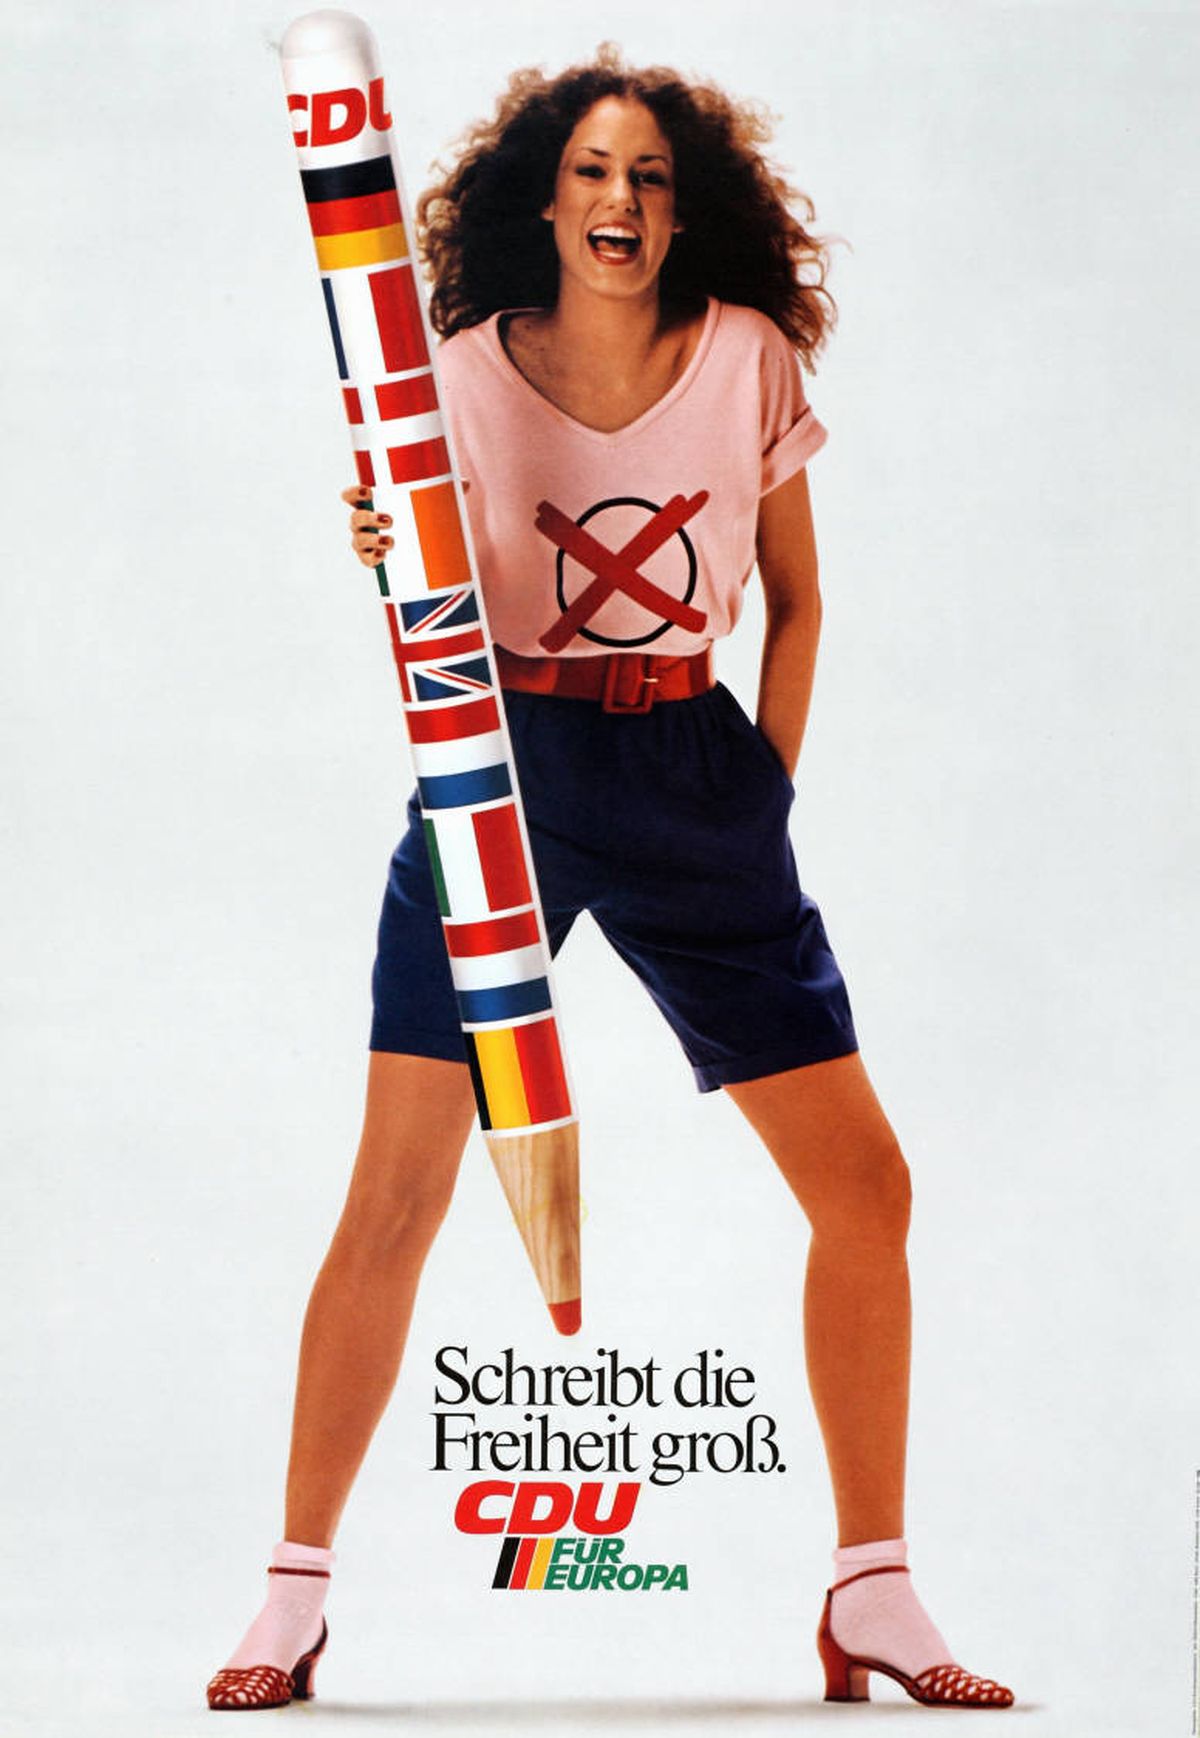 Реклама Немецкого христианско-демократического союза (CDU) перед европейскими выборами 1979 года.